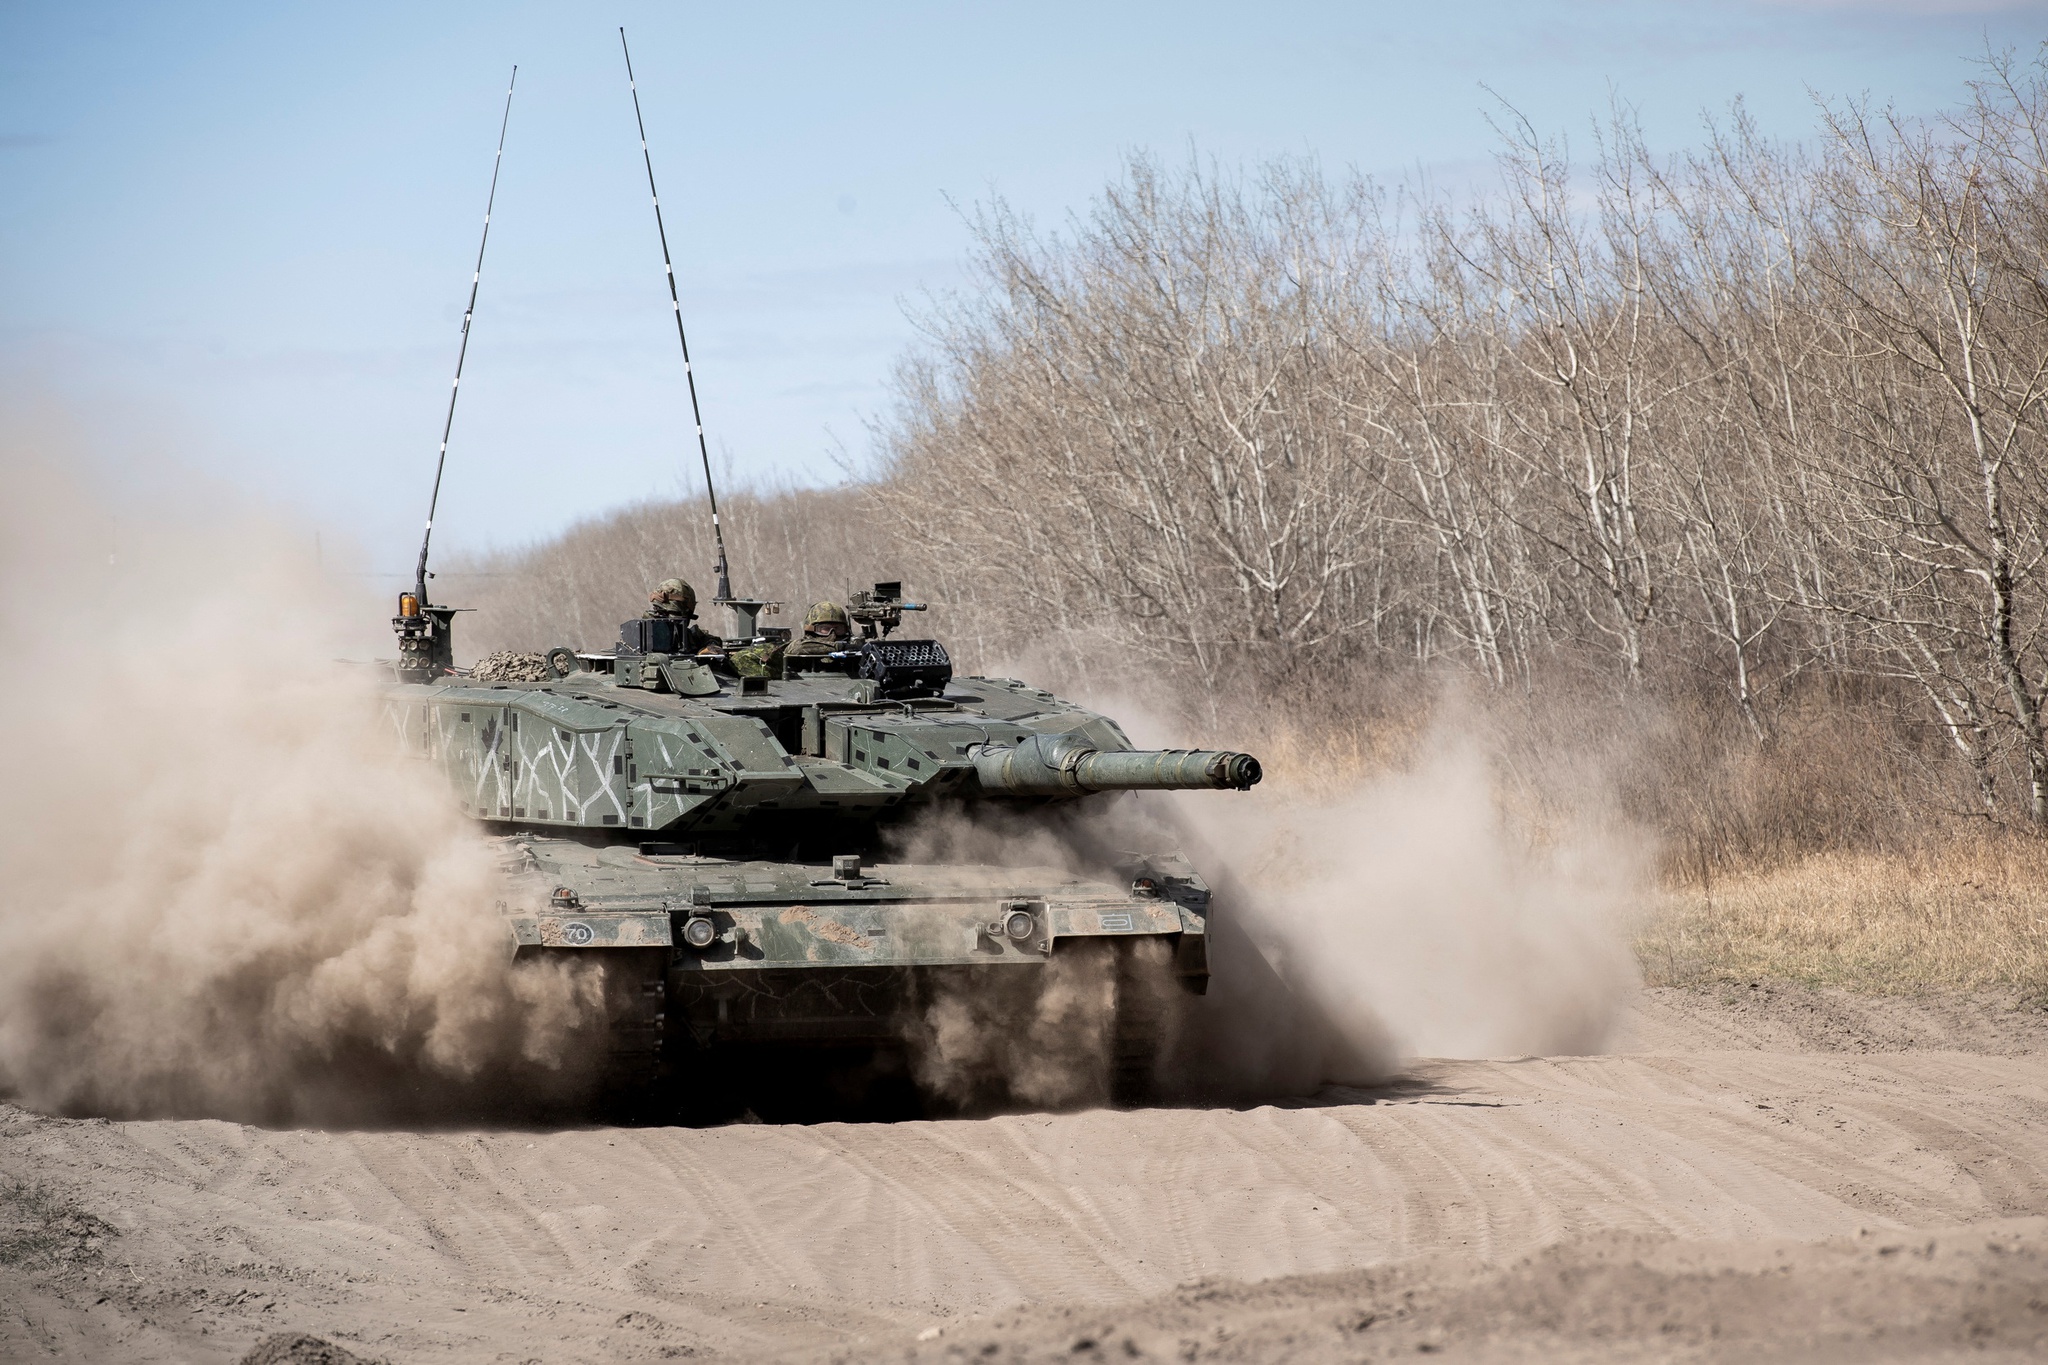 Soldados num Leopard 2, tanque de fabrico alemão, a percorrer uma estrada